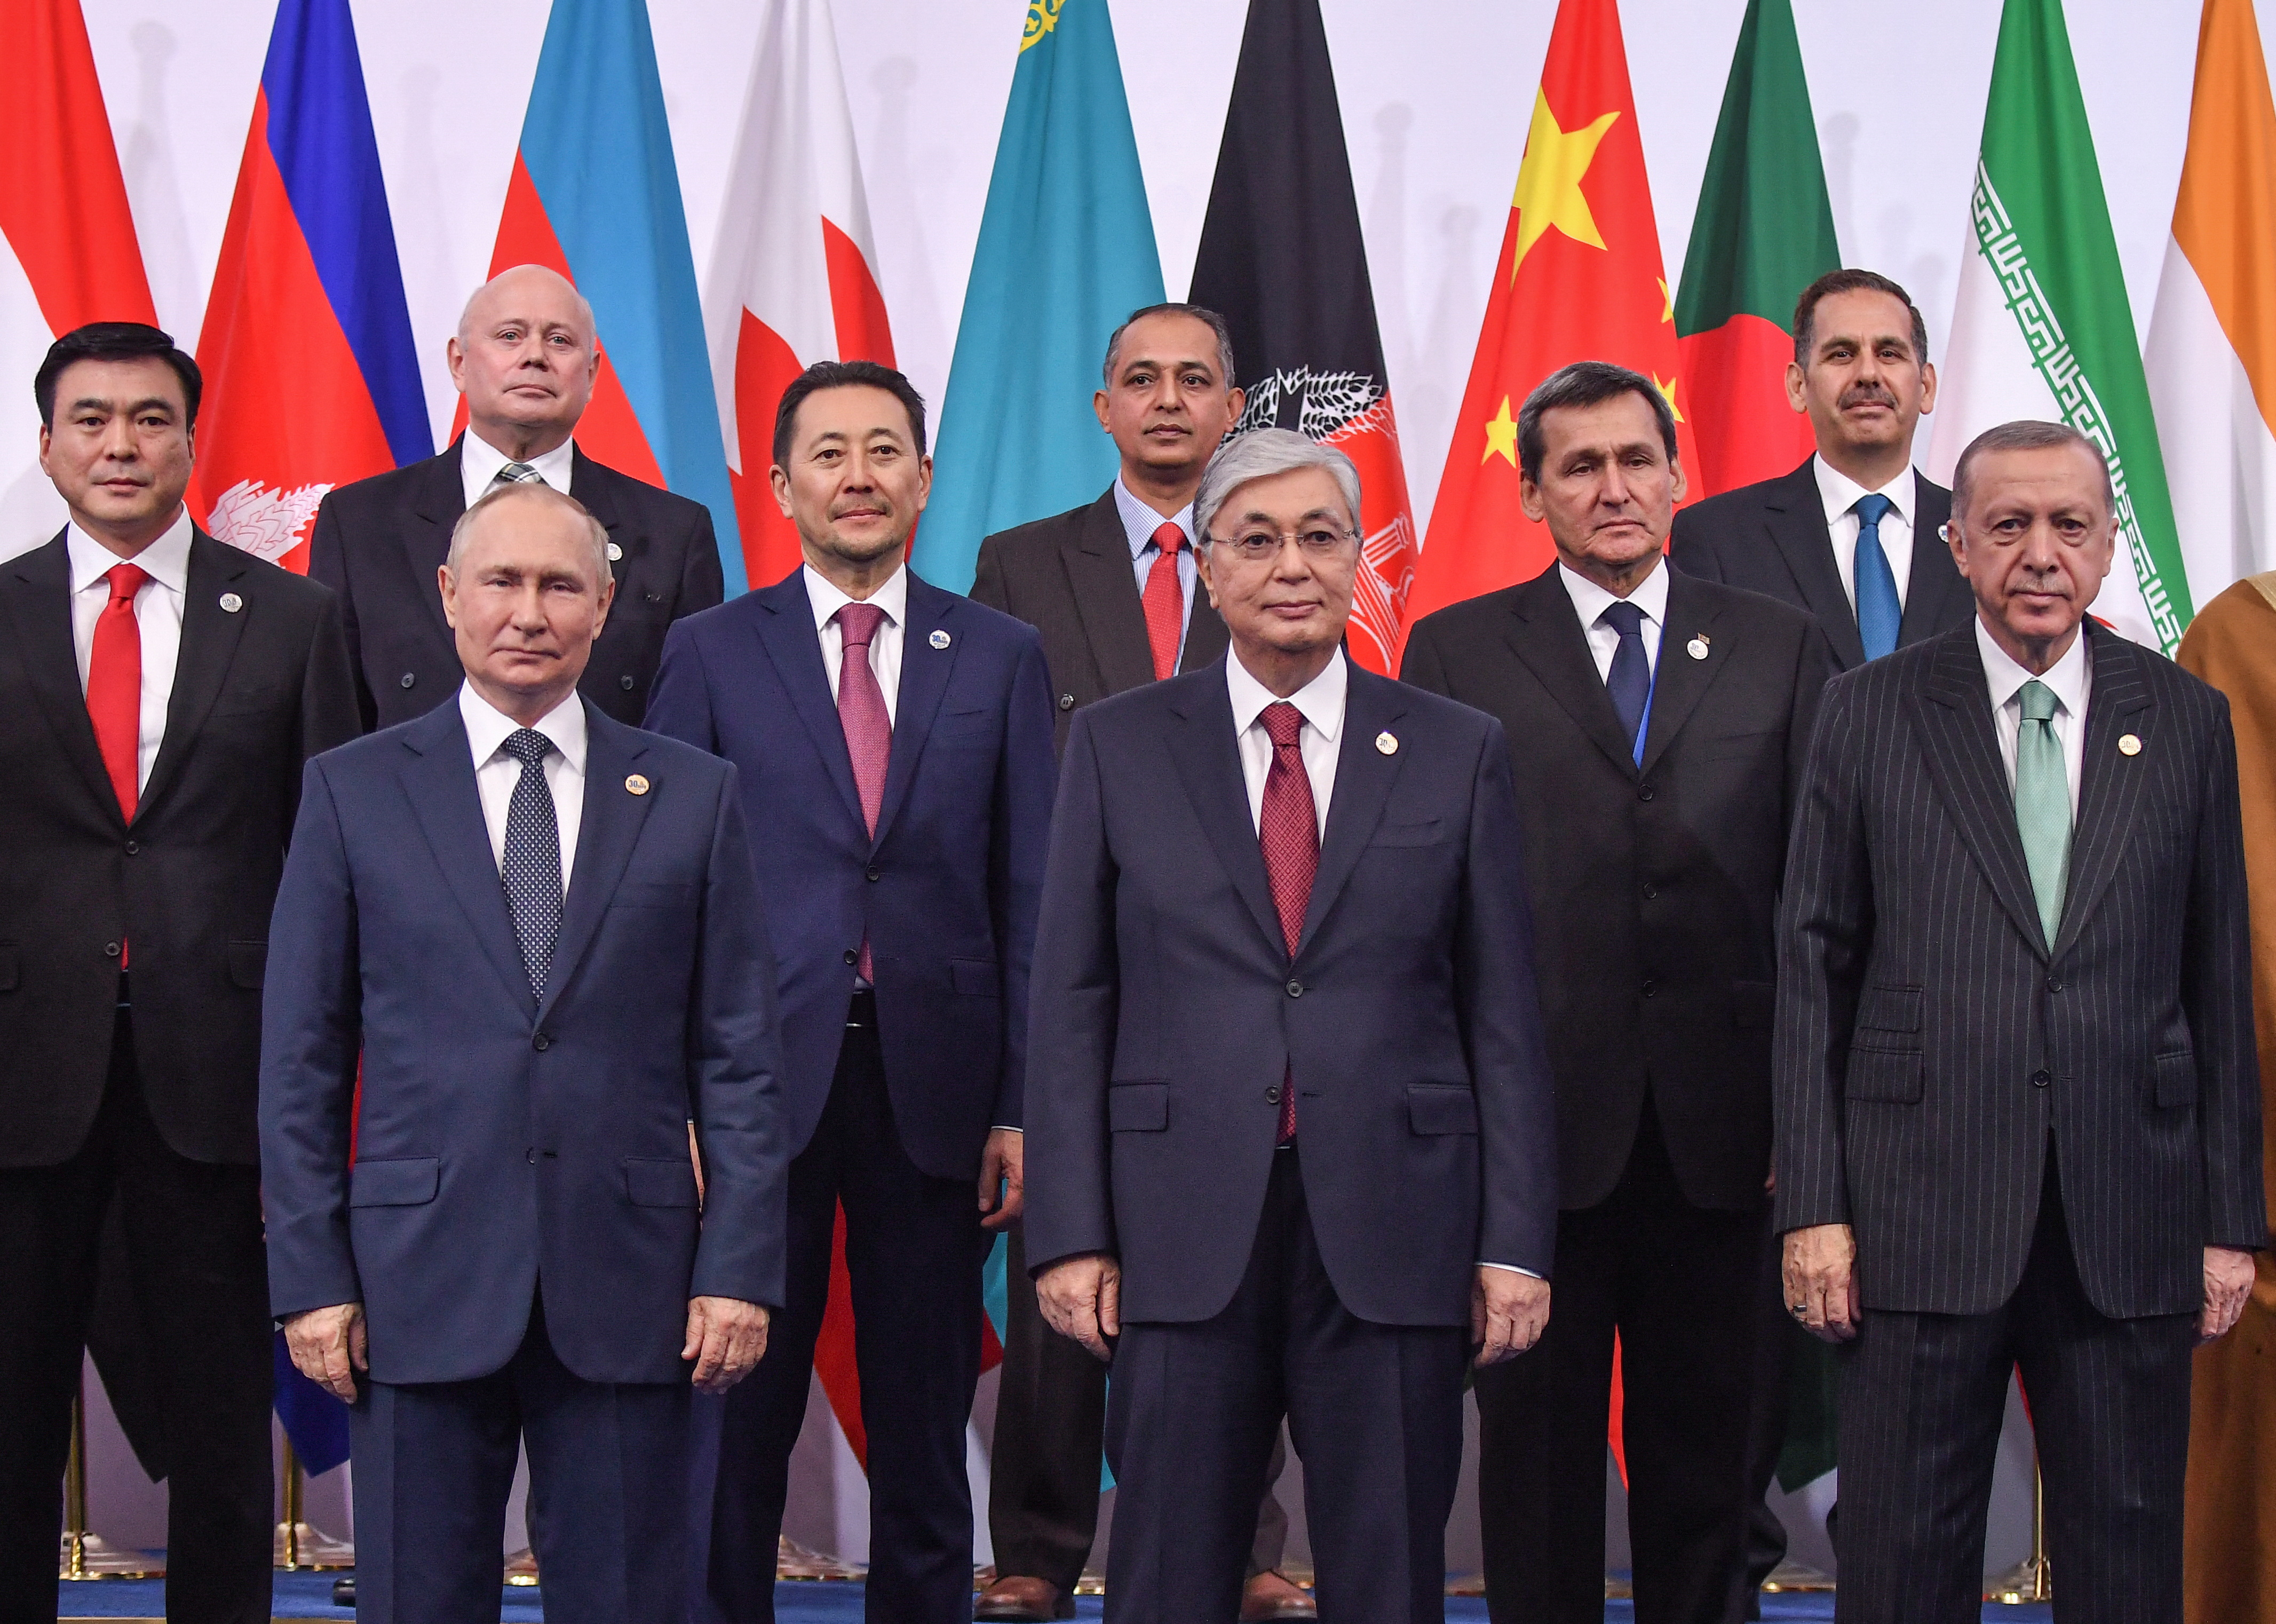 Führungskräfte auf der Konferenz über Kommunikations- und vertrauensbildende Maßnahmen in Asien (CICA) in Kasachstan.  (REUTERS/Turar Kazangapov)